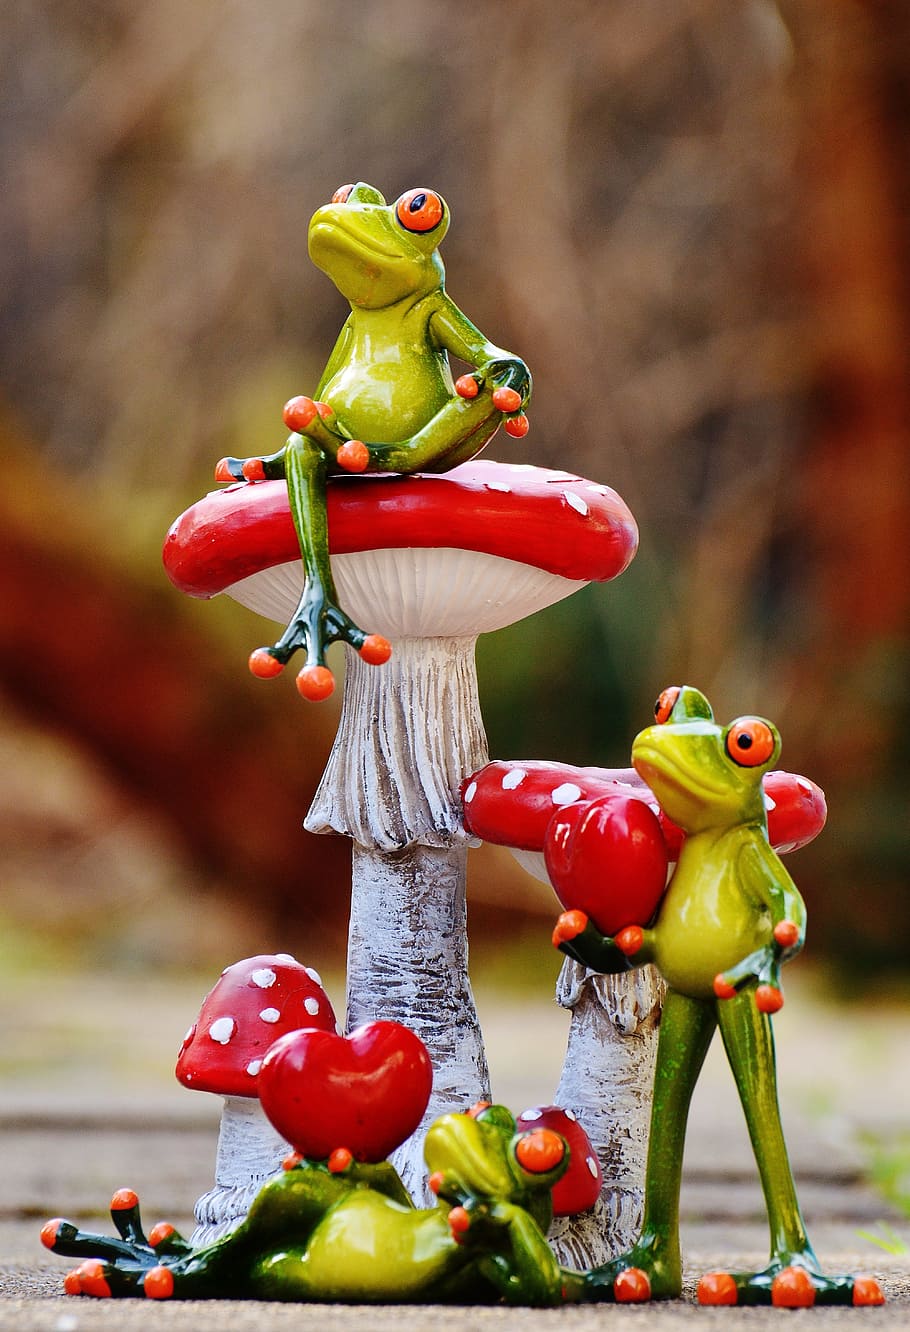 Cute Mushroom Froggy Wallpaper